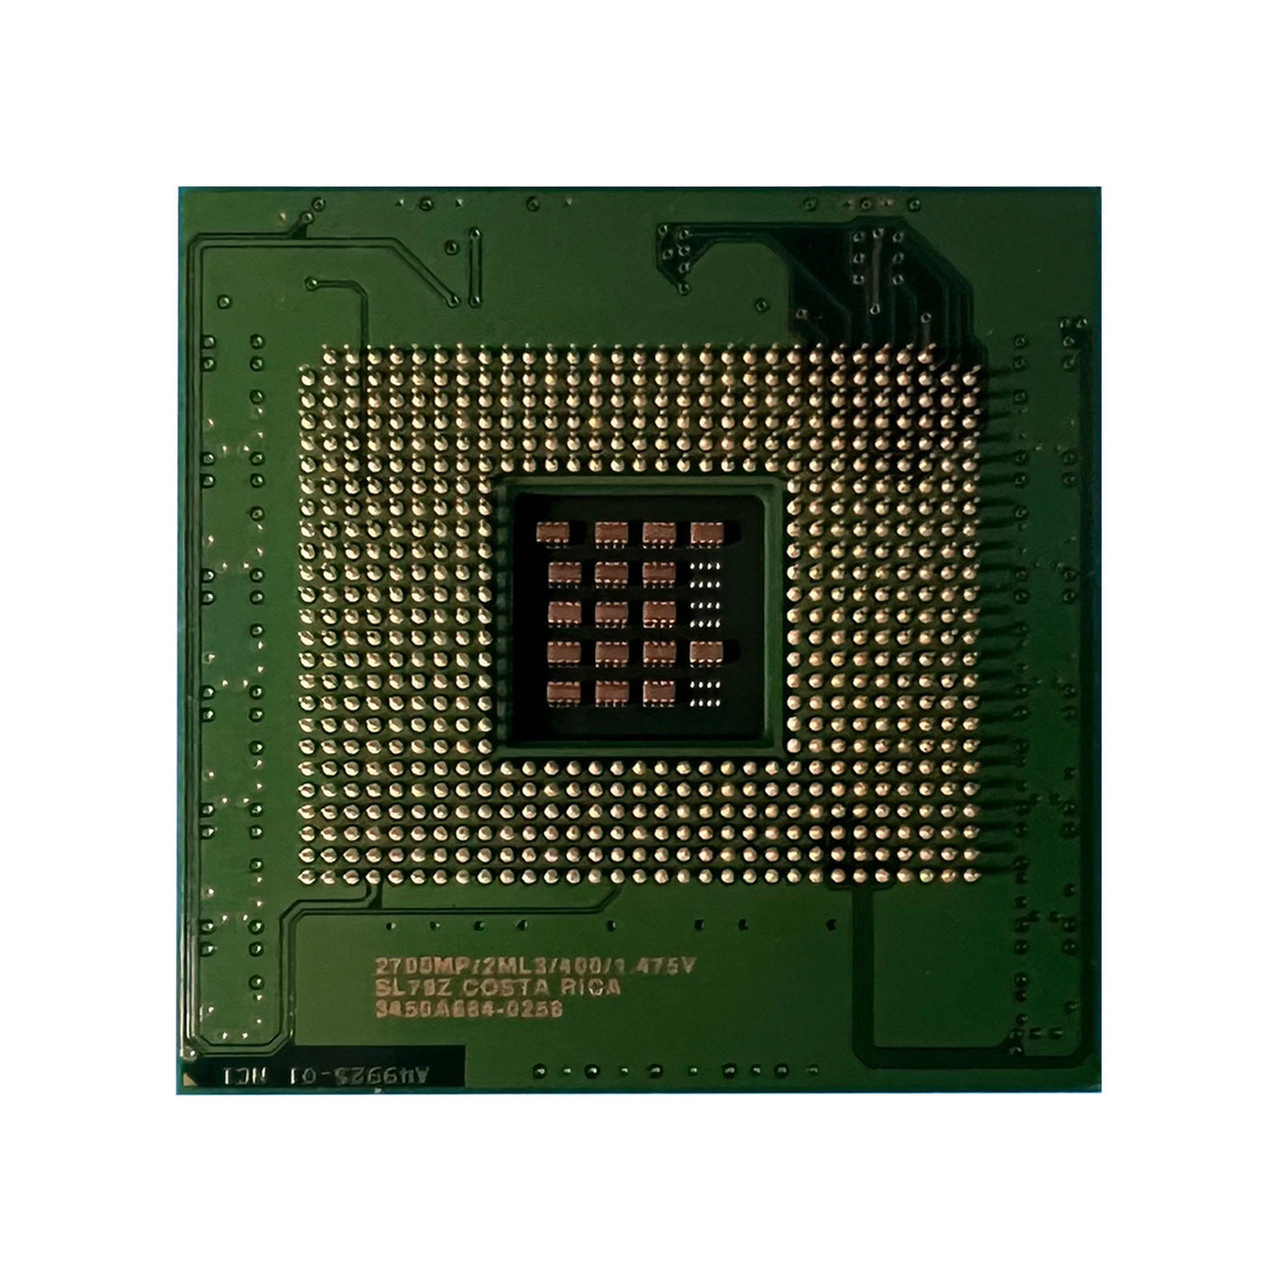 Dell U3374 Xeon 2.7Ghz 2MB 400FSB Processor